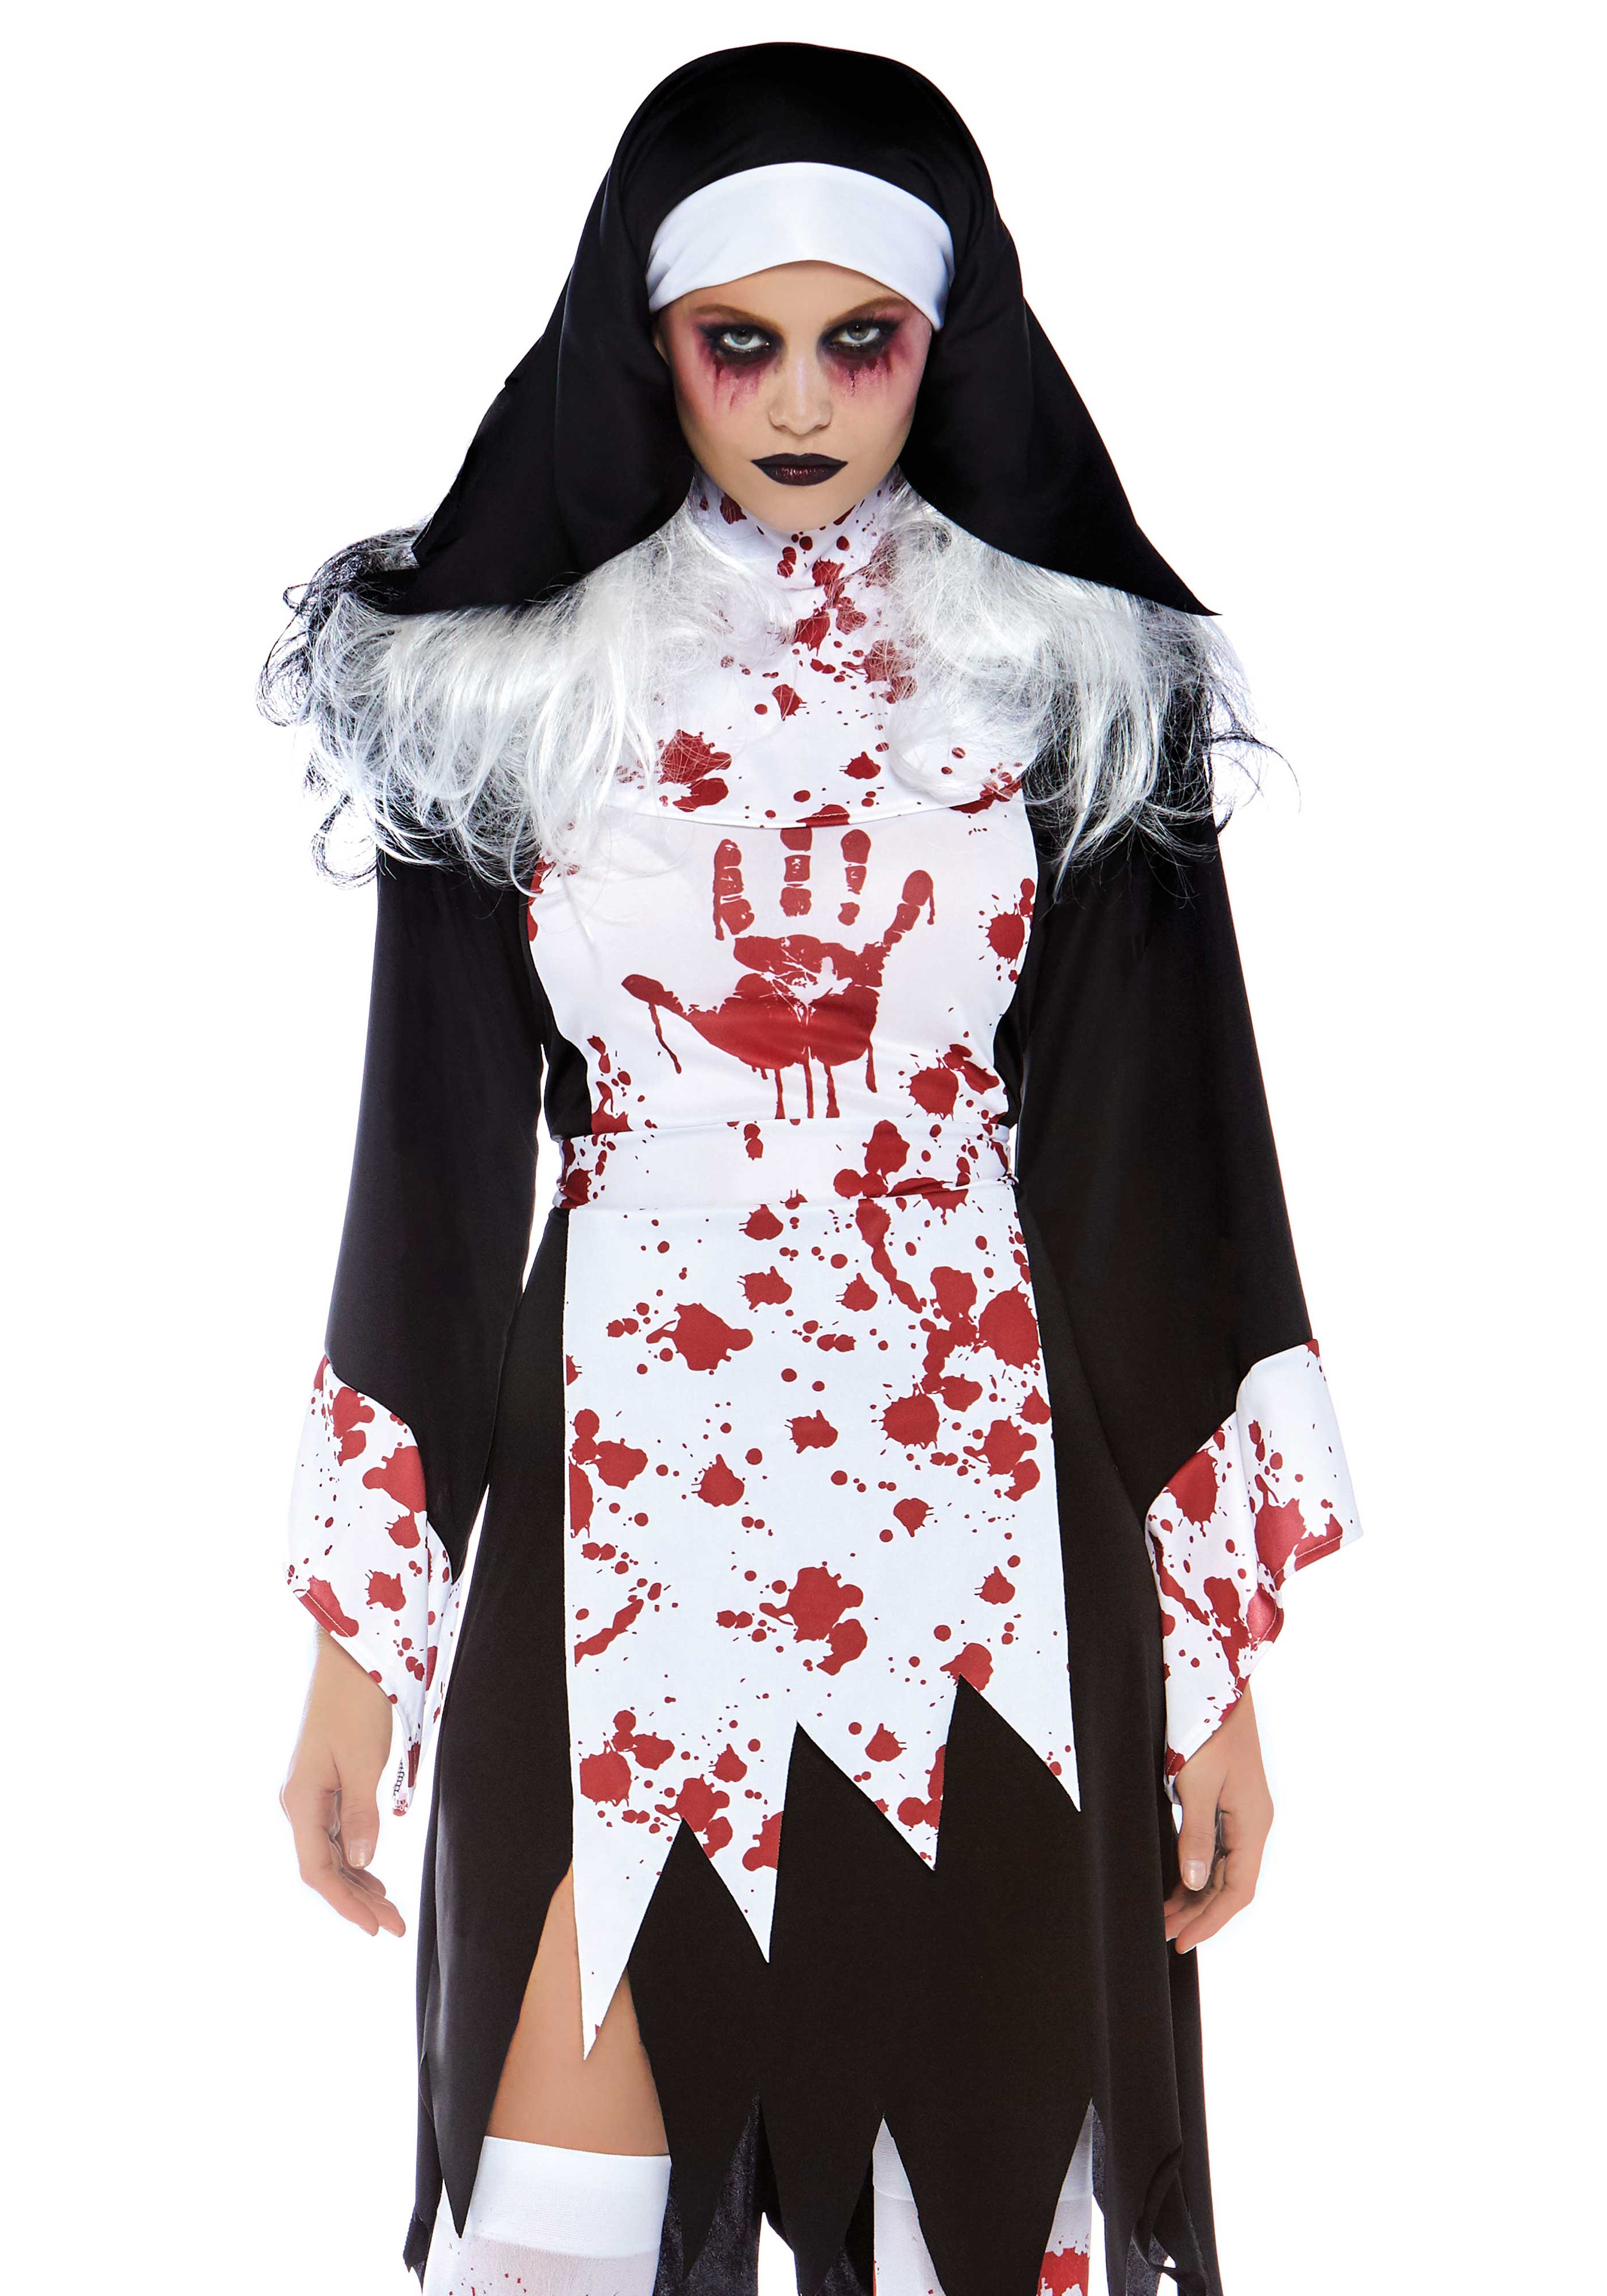 2 Tlg Set Killer Nonne, Beinhaltet Blutiges Zerfetzt Kleid Mit Handabdruck Und Nonnen Habit